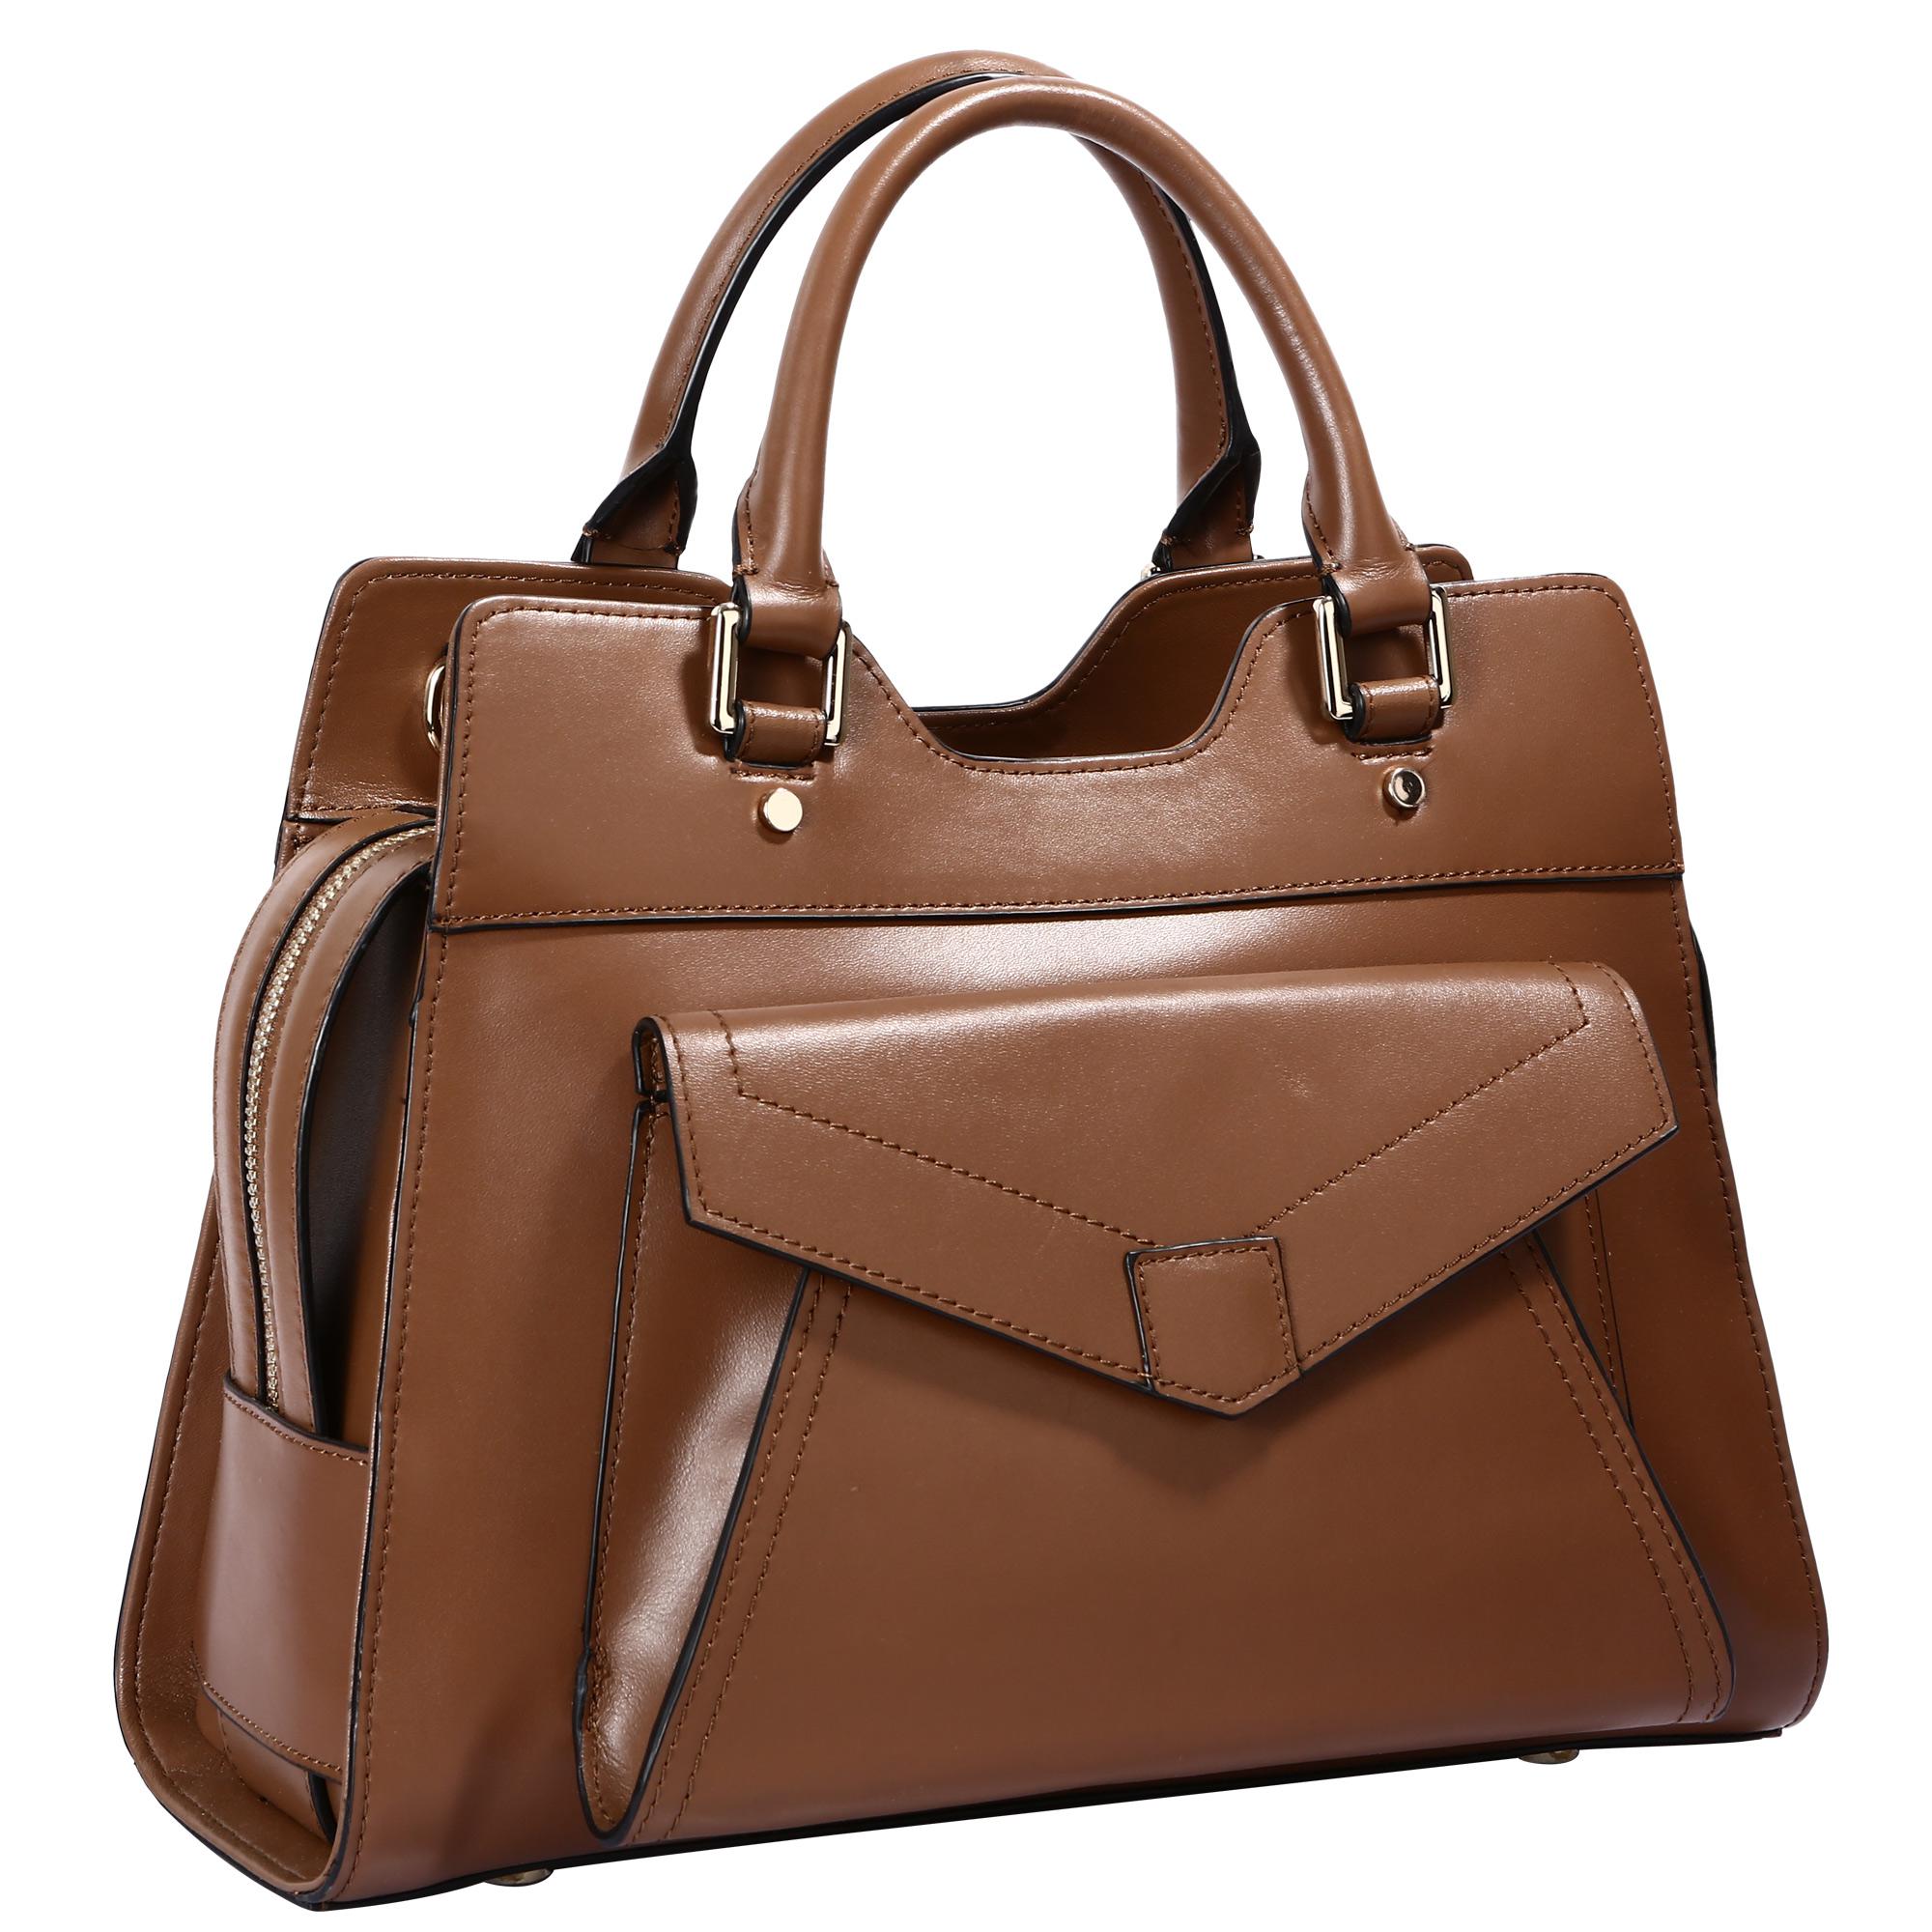 Женская сумочка купить кожаную. Сумка женская Polar 50010121, коричневый. Сумка женская Pola 897f, коричневый. Pola Leather сумка. Кожаная сумка а&h 5113 Brown.